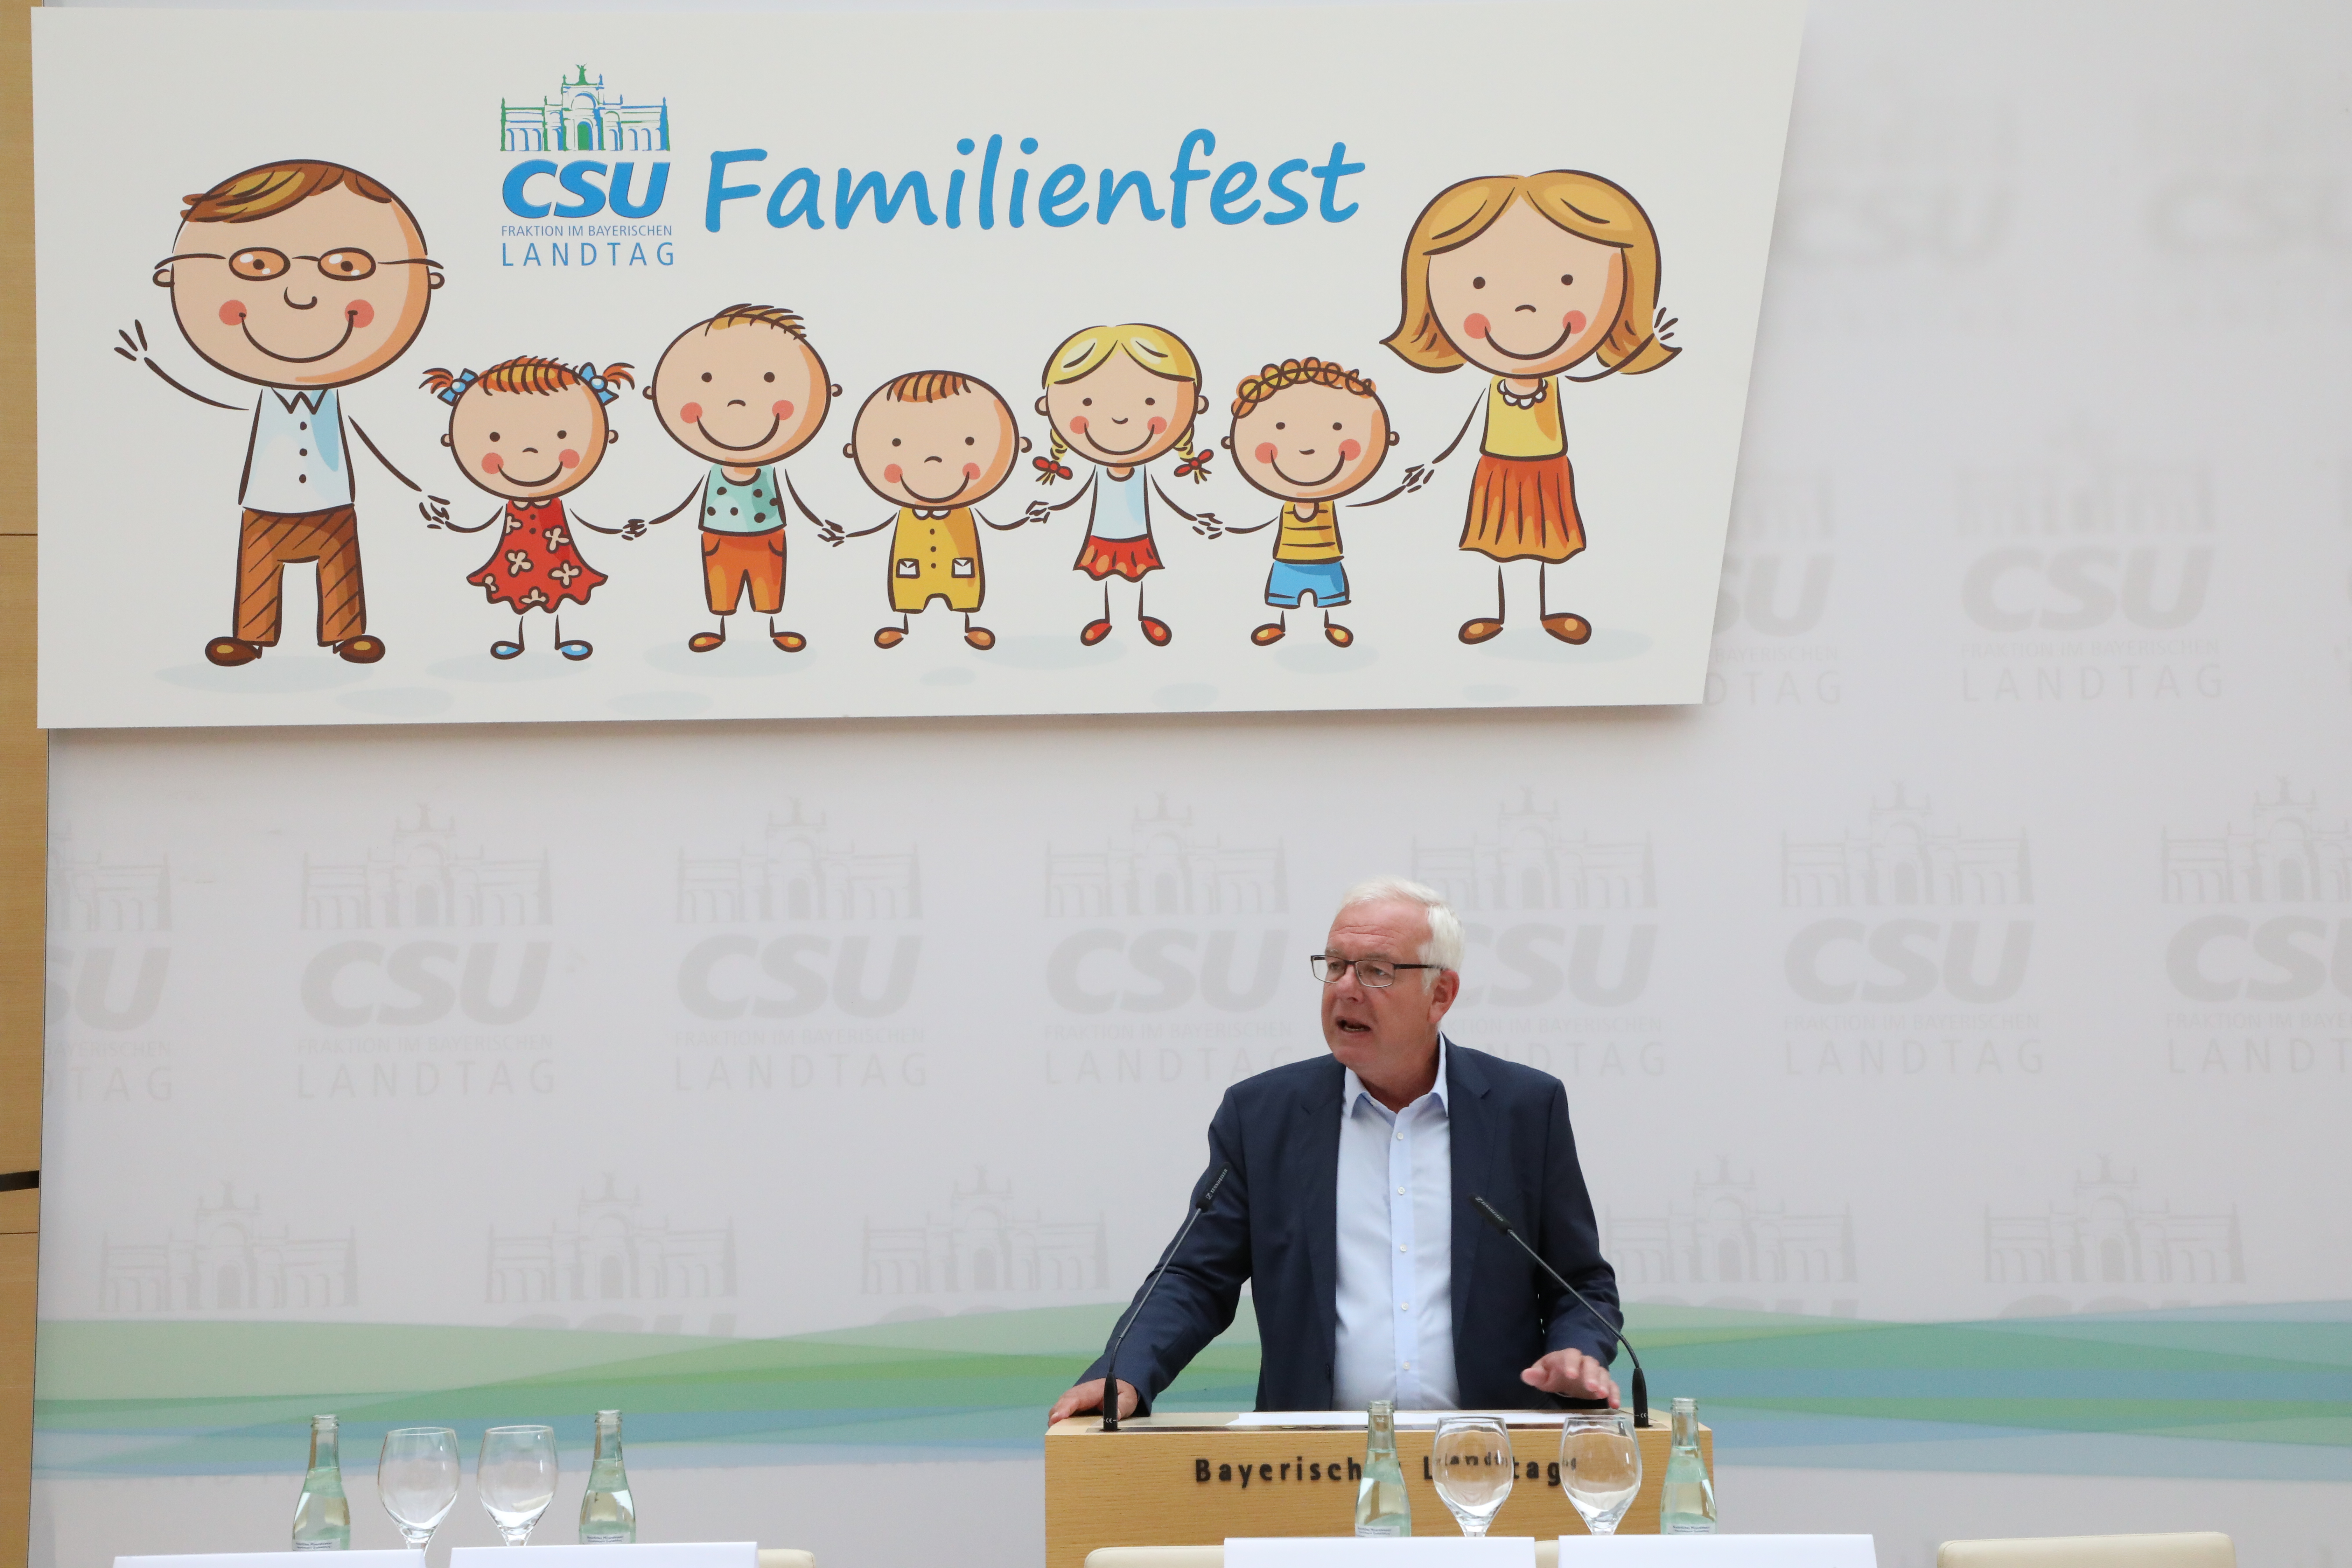 16.61.2018 - Familienfest 2018 - Fraktionsvorsitzender Thomas Kreuzer begrüßt die Gäste beim Familienfest der CSU-Fraktion: "Uns sind alle Familienmodelle gleich viel wert. Wir wollen, dass Eltern selbst entscheiden können. Daher investieren wir nicht ausschließlich in den Ausbau der Kinderbetreuung." (Foto: CSU-Fraktion)